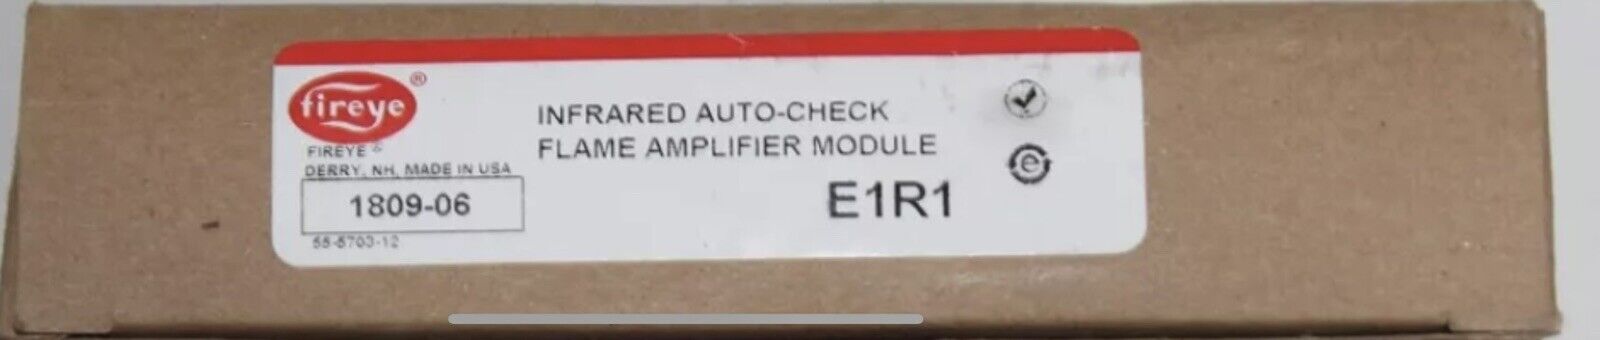 E1R1 FIREYE INFRARED AUTO-CHECK FLAME AMPLIFIER MODULE